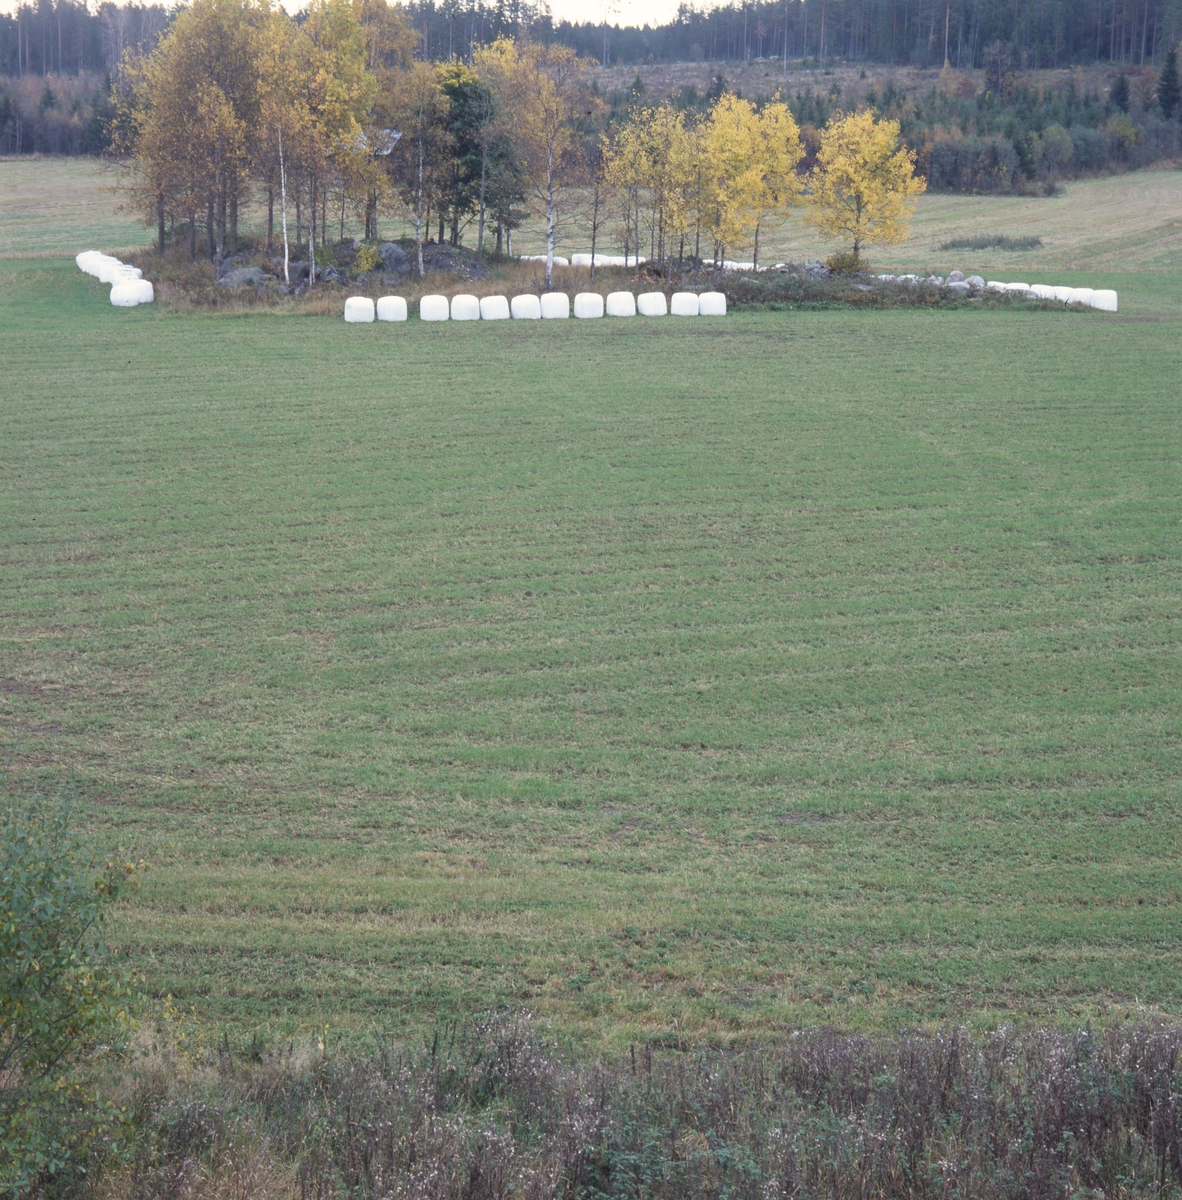 Rader av ensilagebalar i vit plast, "bonnägg", ligger runt en träddunge mitt på en åker, hösten 2001.